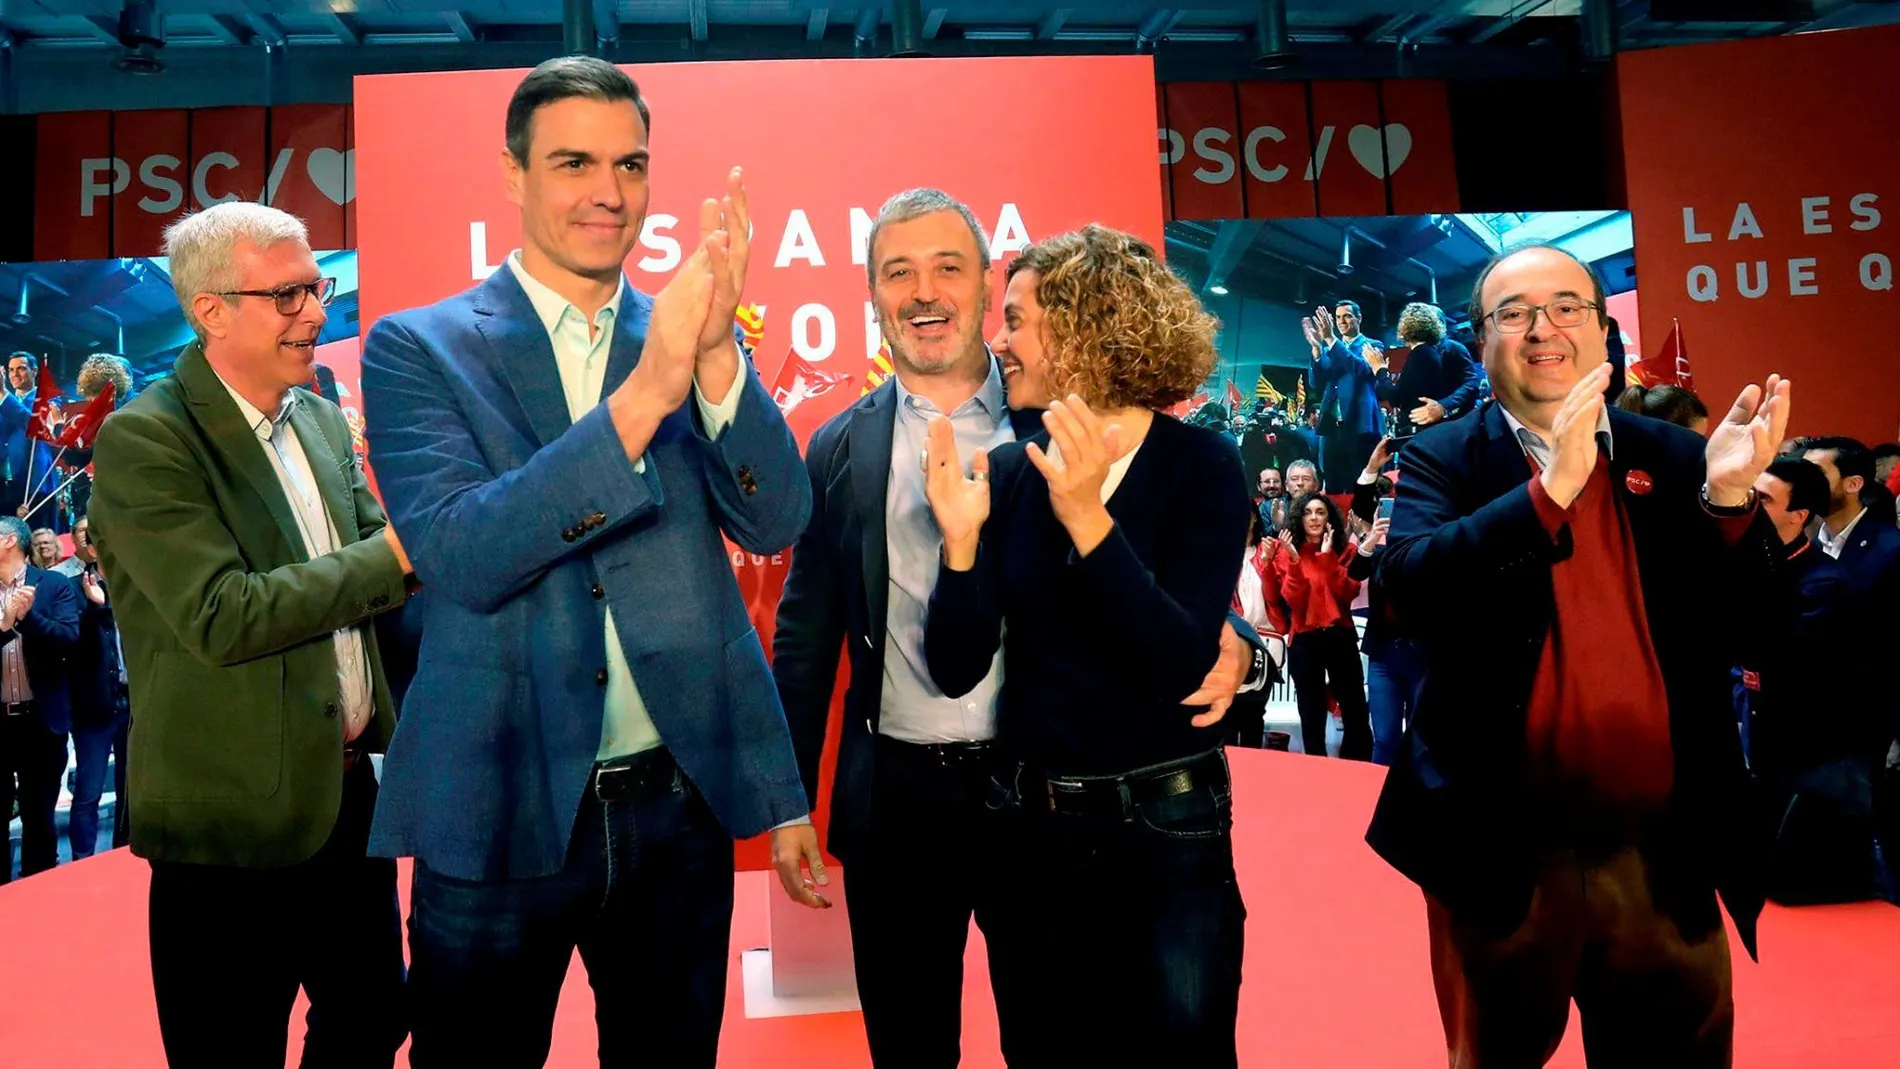 El presidente Pedro Sánchez junto a Miquel Iceta, Meritxell Batet, Jaume Collboni y Fèlix Ballesteros ayer en Tarragona